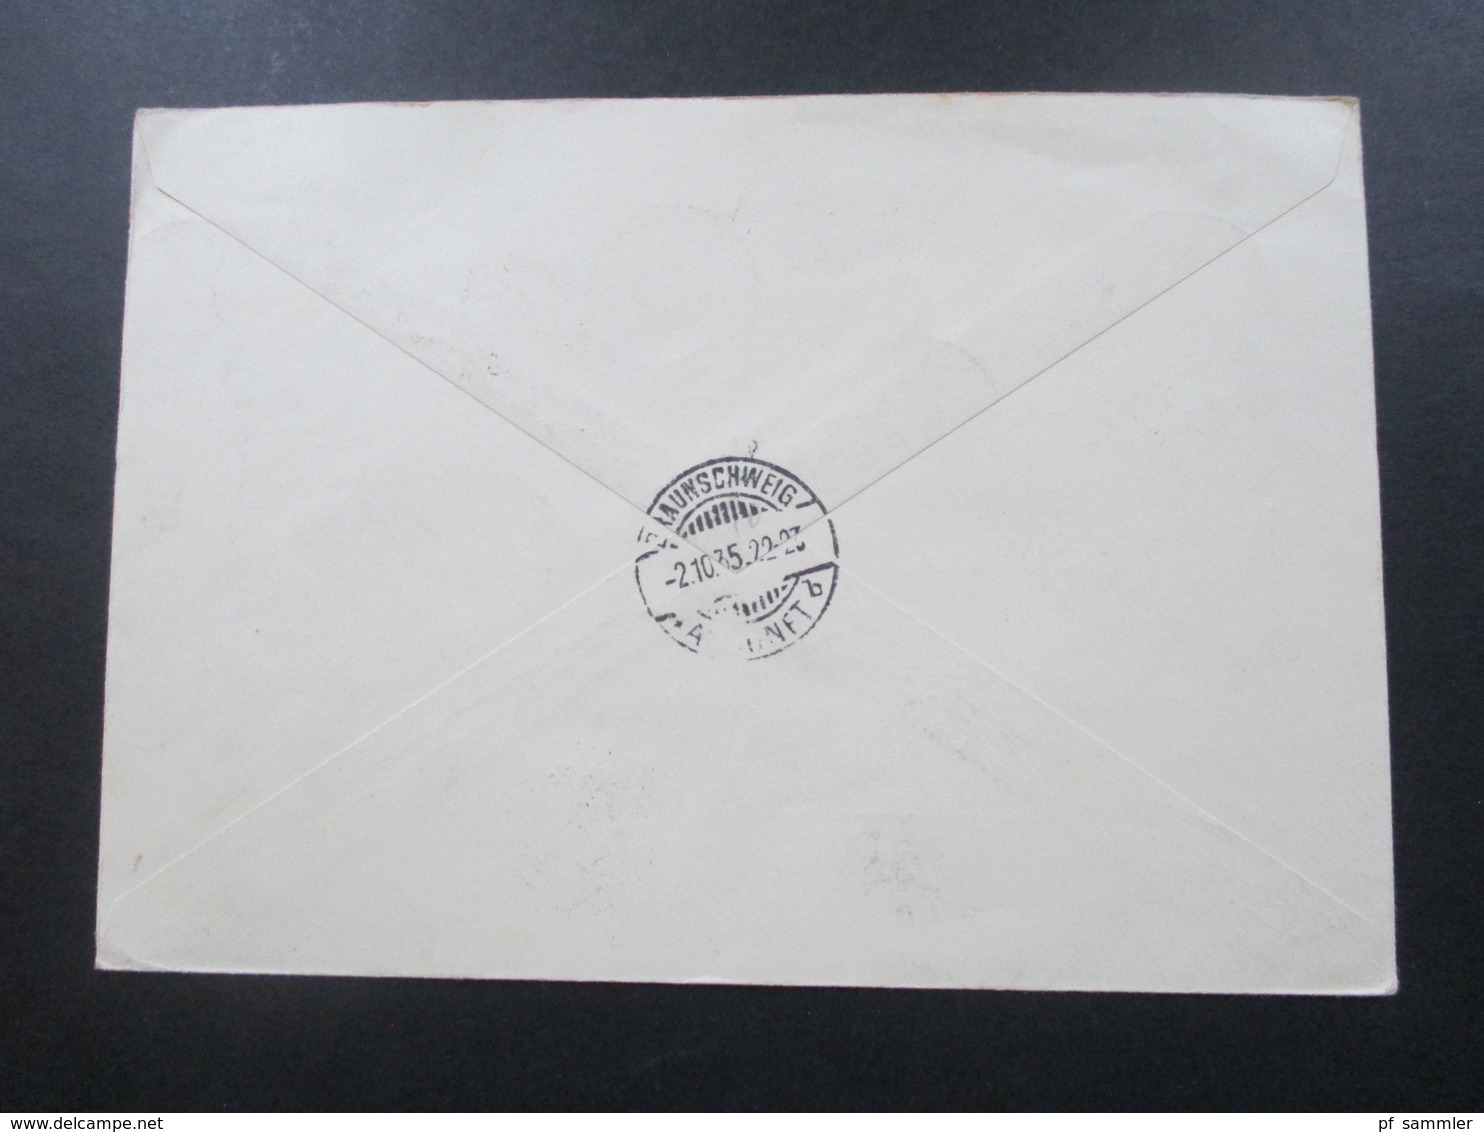 Ungarn 1935 Nr. 522 - 527 Satzbrief Einschreiben Budapest 62 Luftpostbrief An Richard Borek In Braunschweig Mit Ak Stemp - Brieven En Documenten